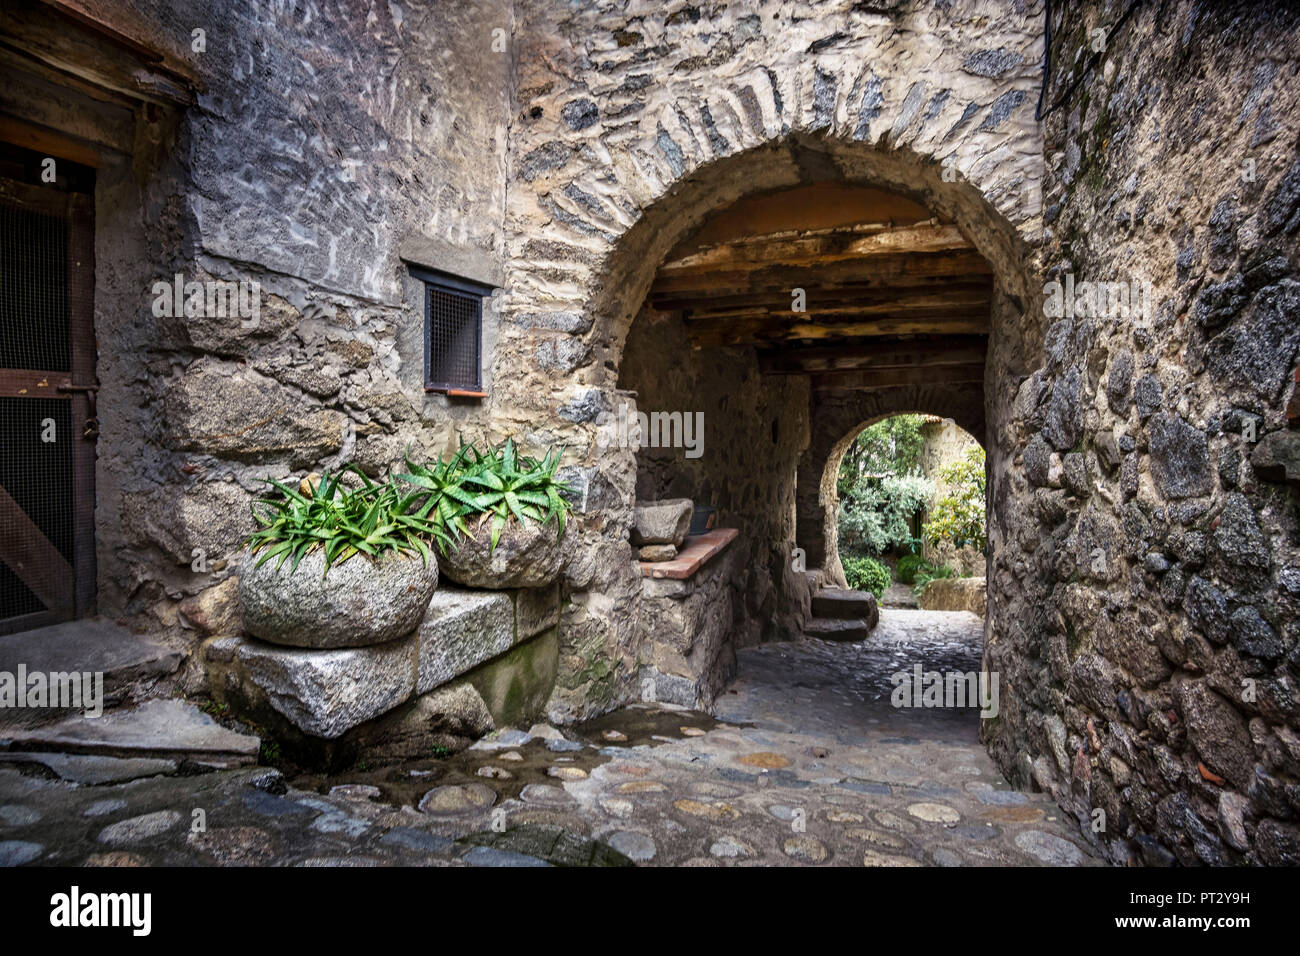 Pavimentazione di pietra, aloe vera piante in contenitore in pietra e arco in pietra Foto Stock